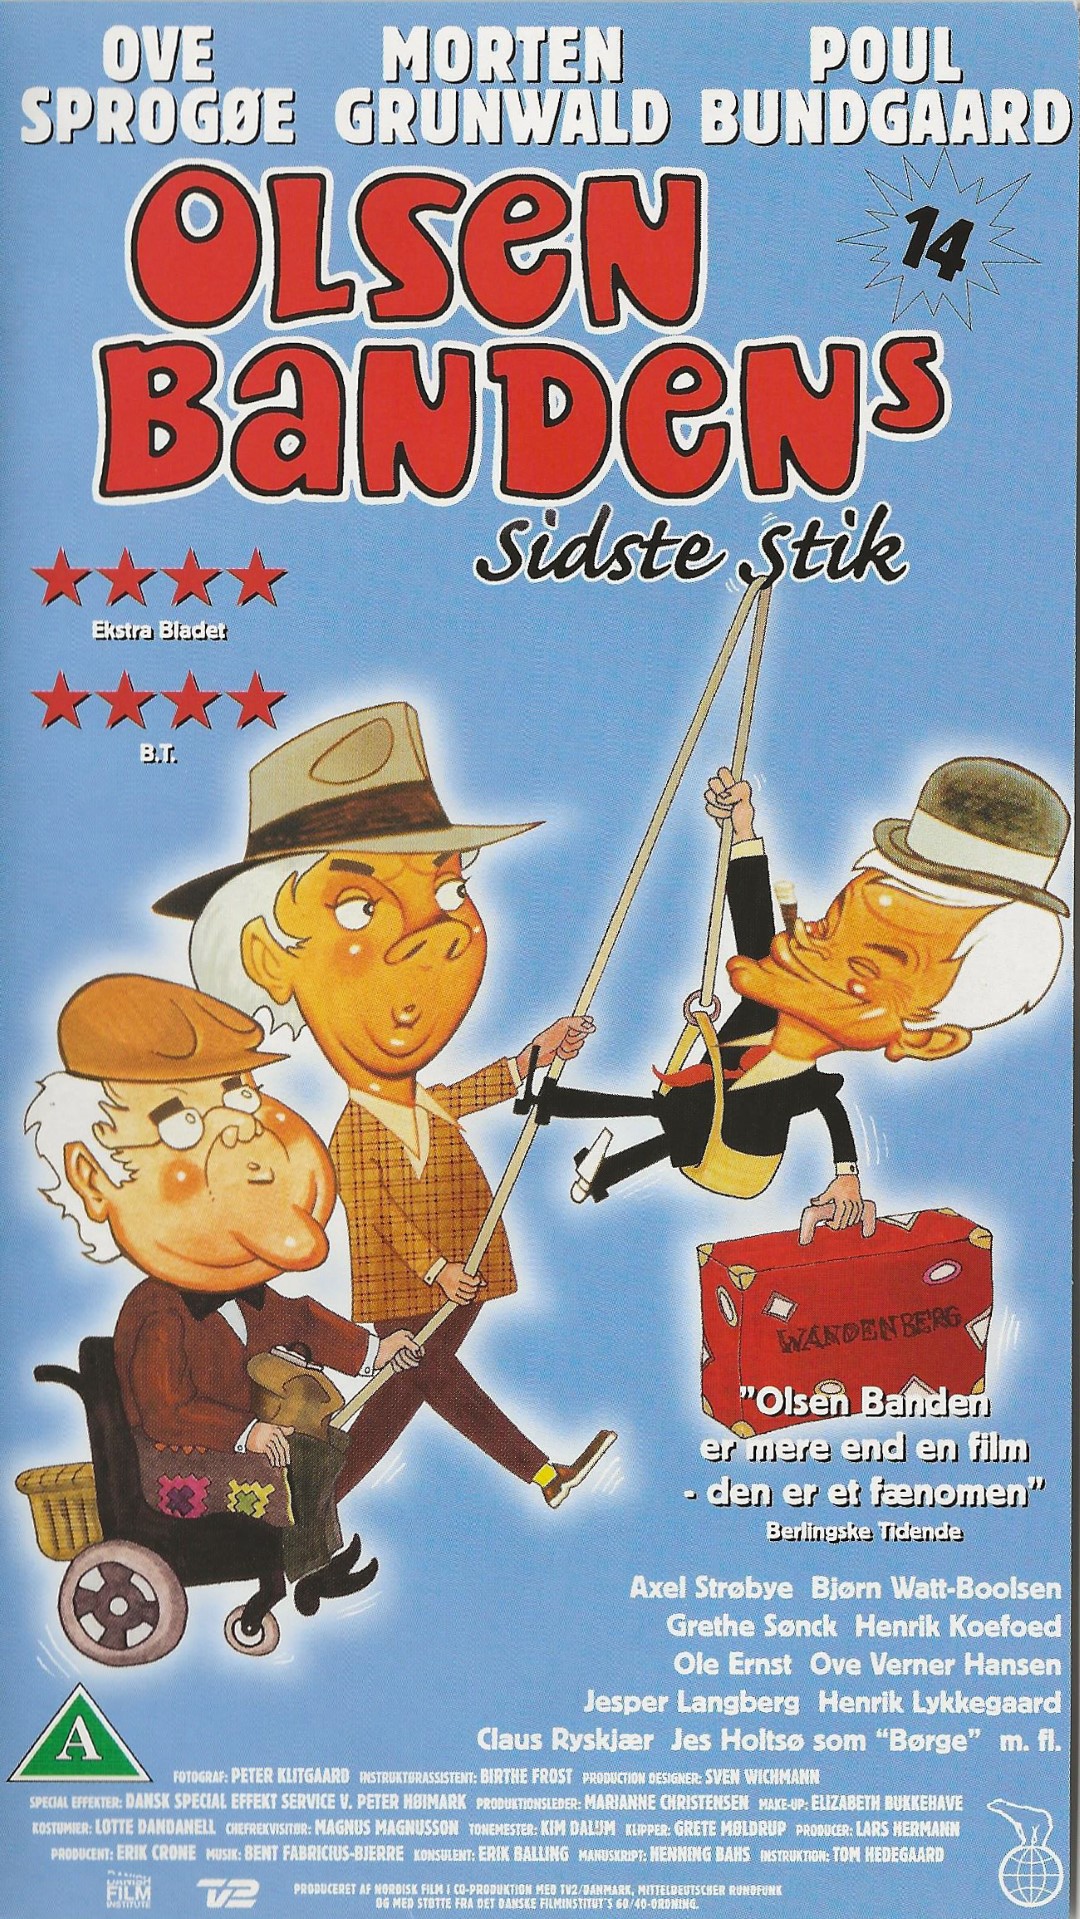 Olsen Banden 14 - Olsen Bandens sidste stik  VHS Nordisk Film 1994